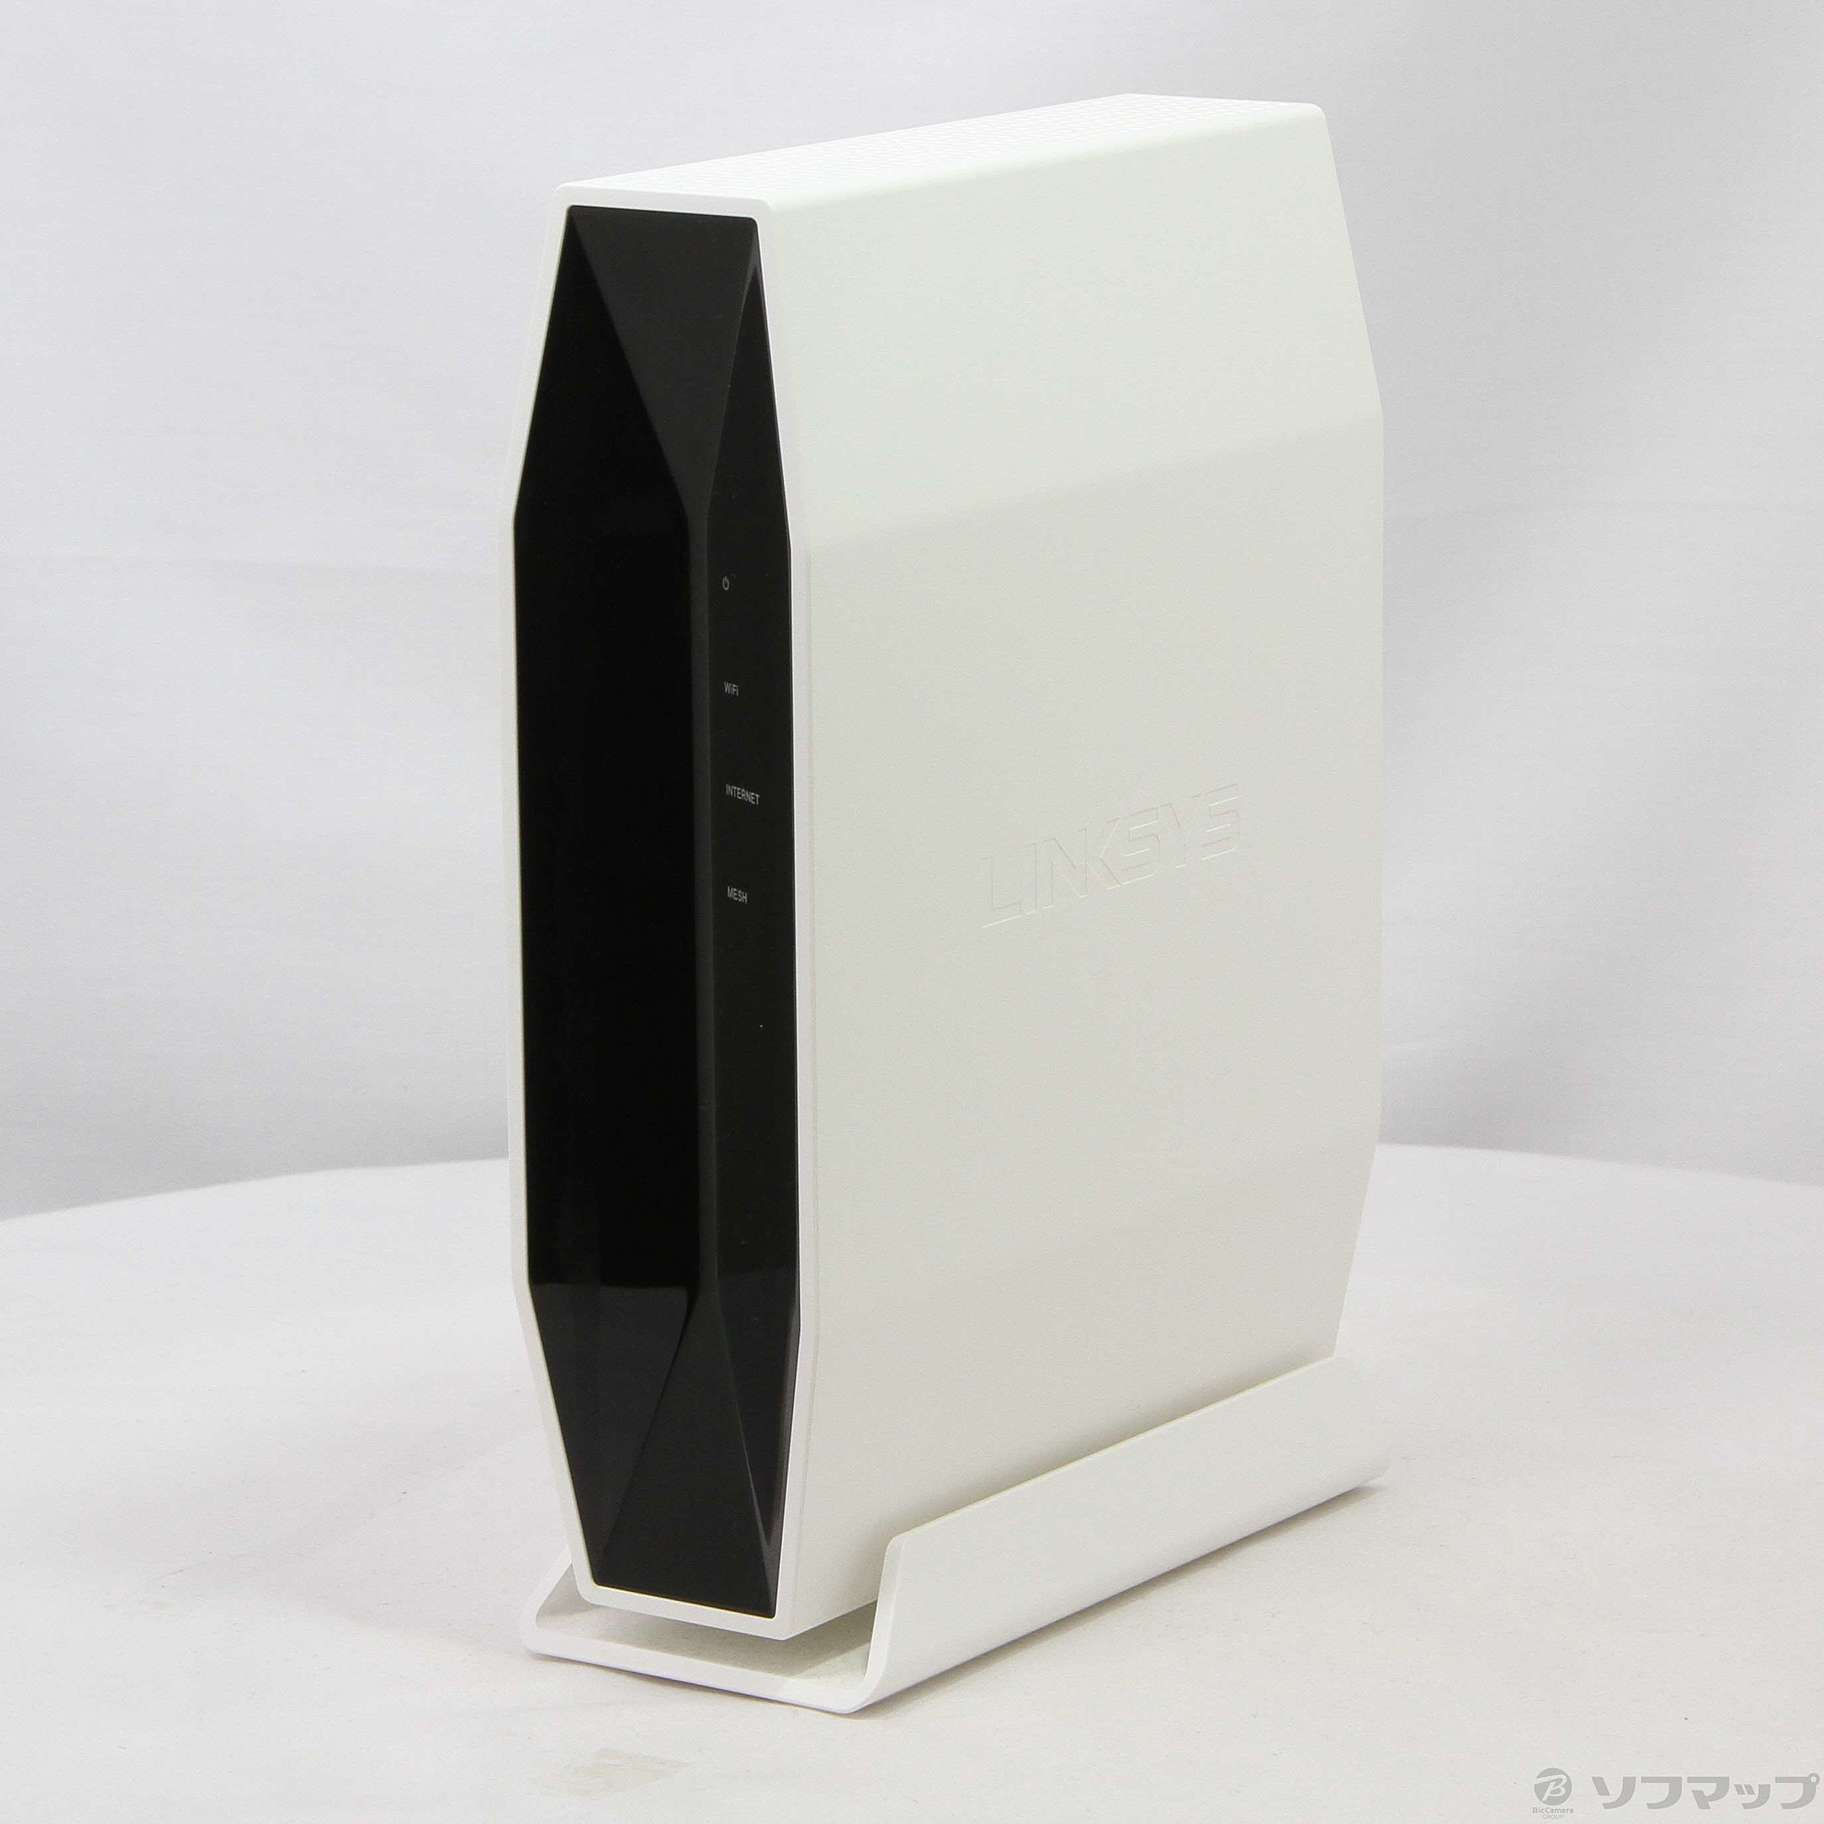 セール対象品 Linksys Dual-Band AX5400 WiFi 6 EasyMesh Compatible Router (E9450)